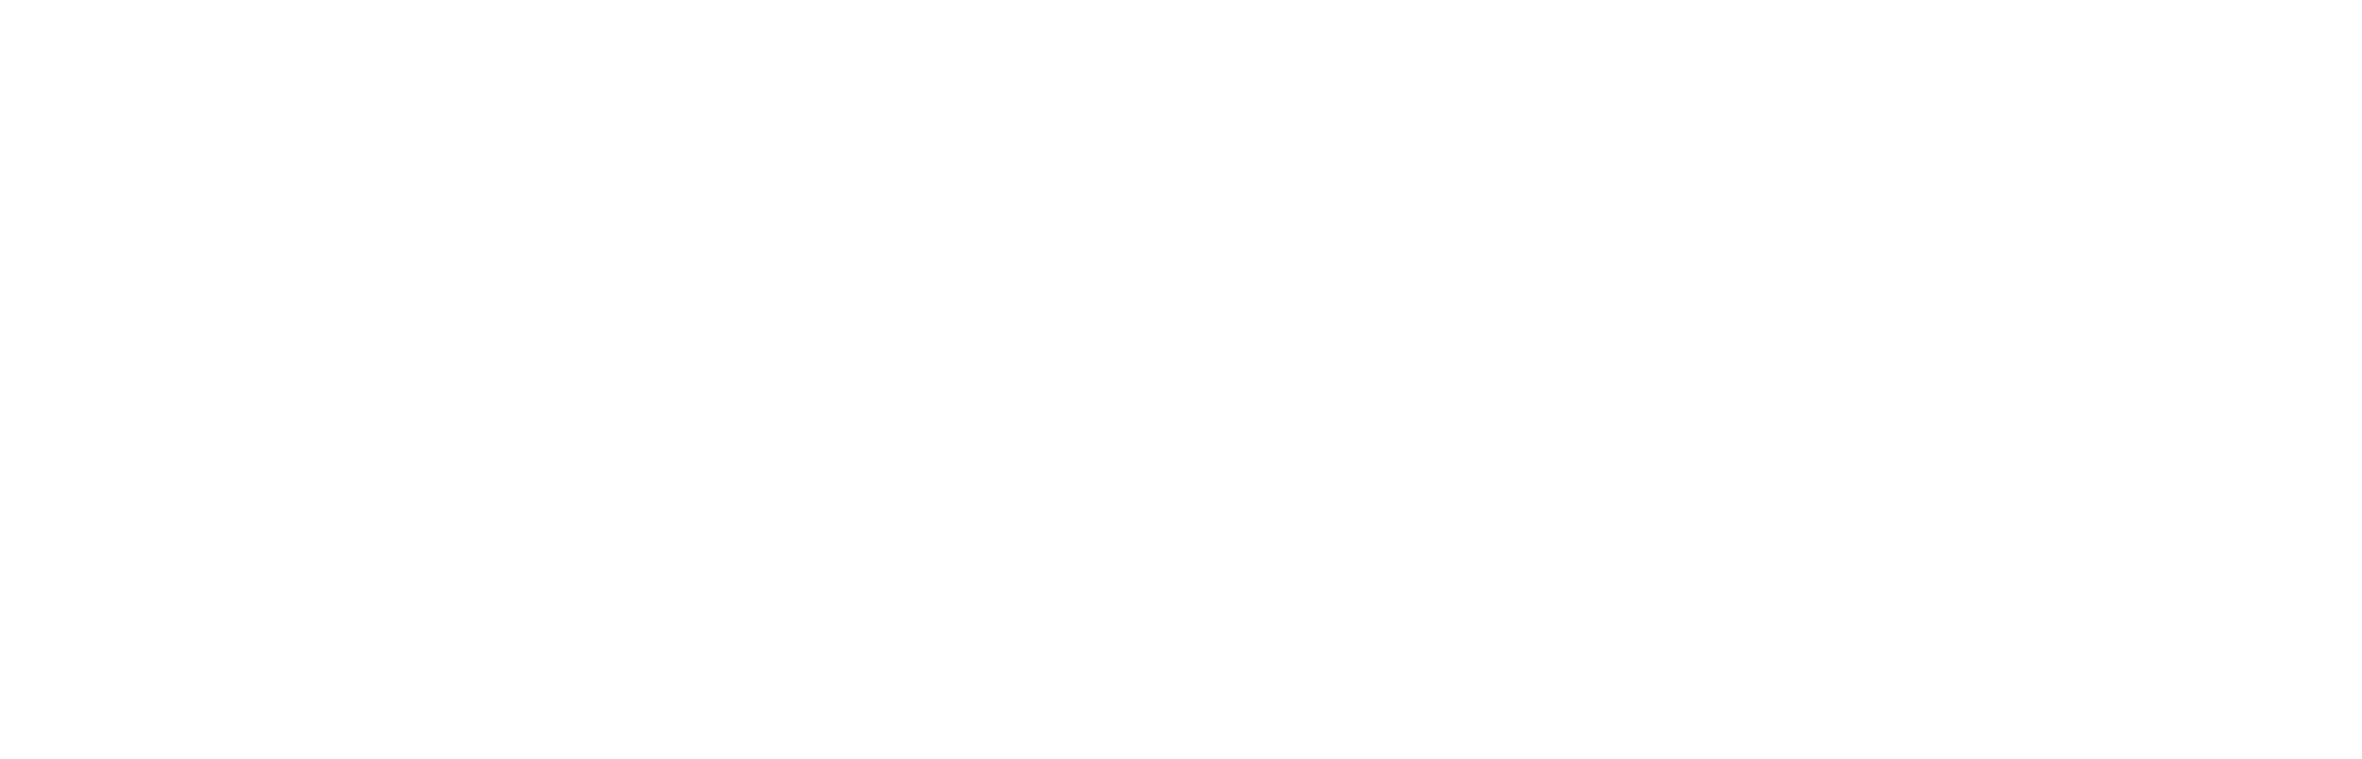 L'Oreal_logo.png